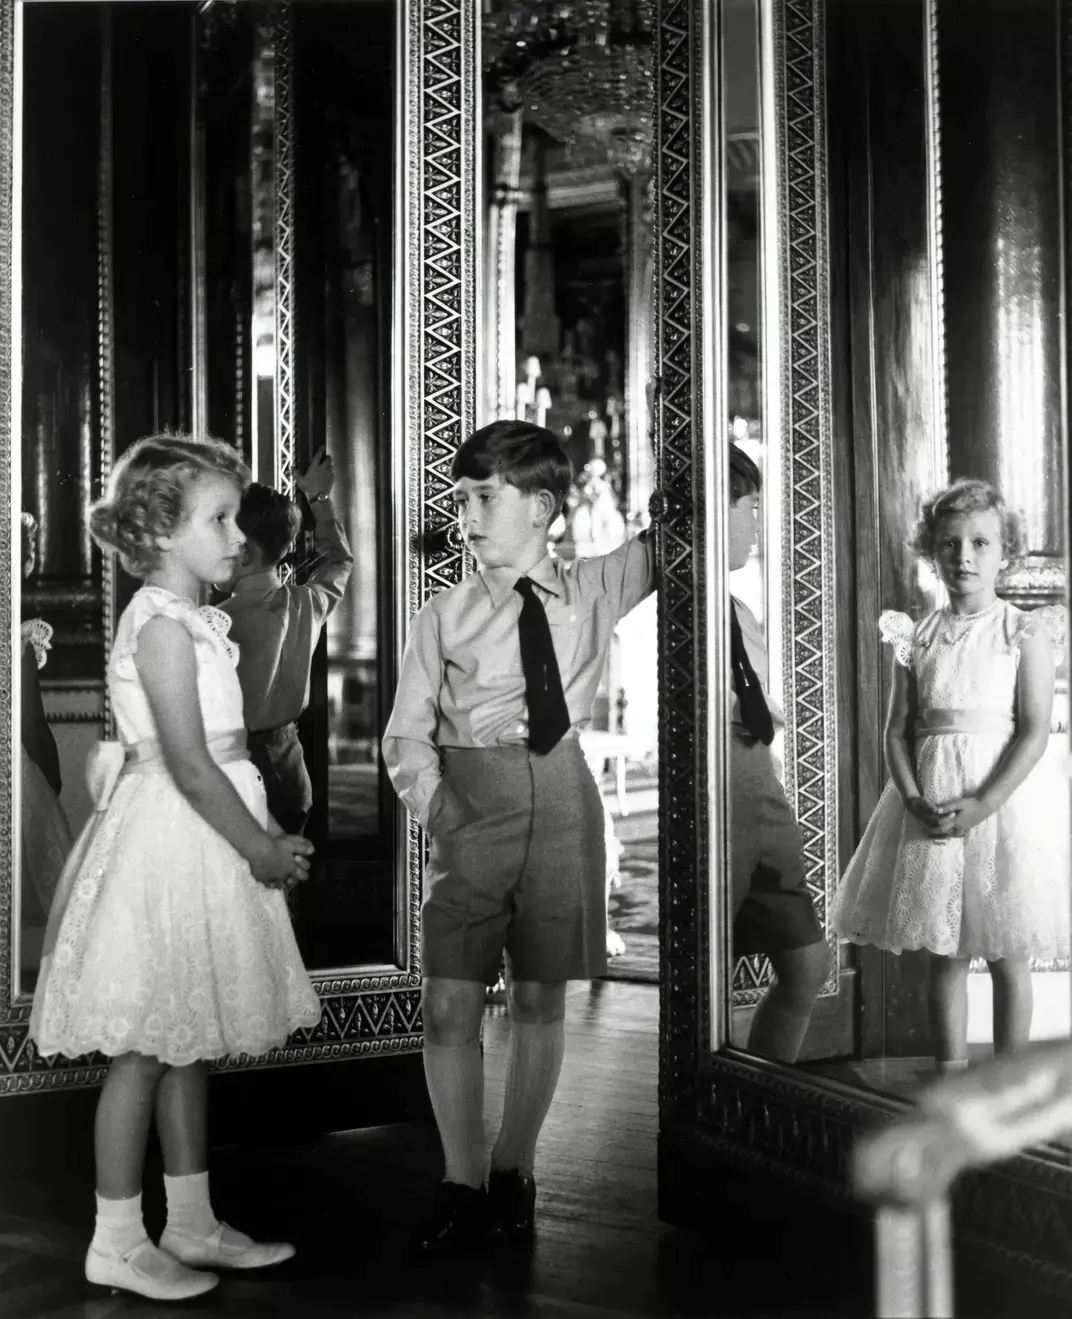 Ο νεαρός πρίγκιπας Κάρολος και η αδελφή πριγκίπισσα Άννα από τον Άντονι Άρμοστρονγκ – Τζόουνς, το 1956 